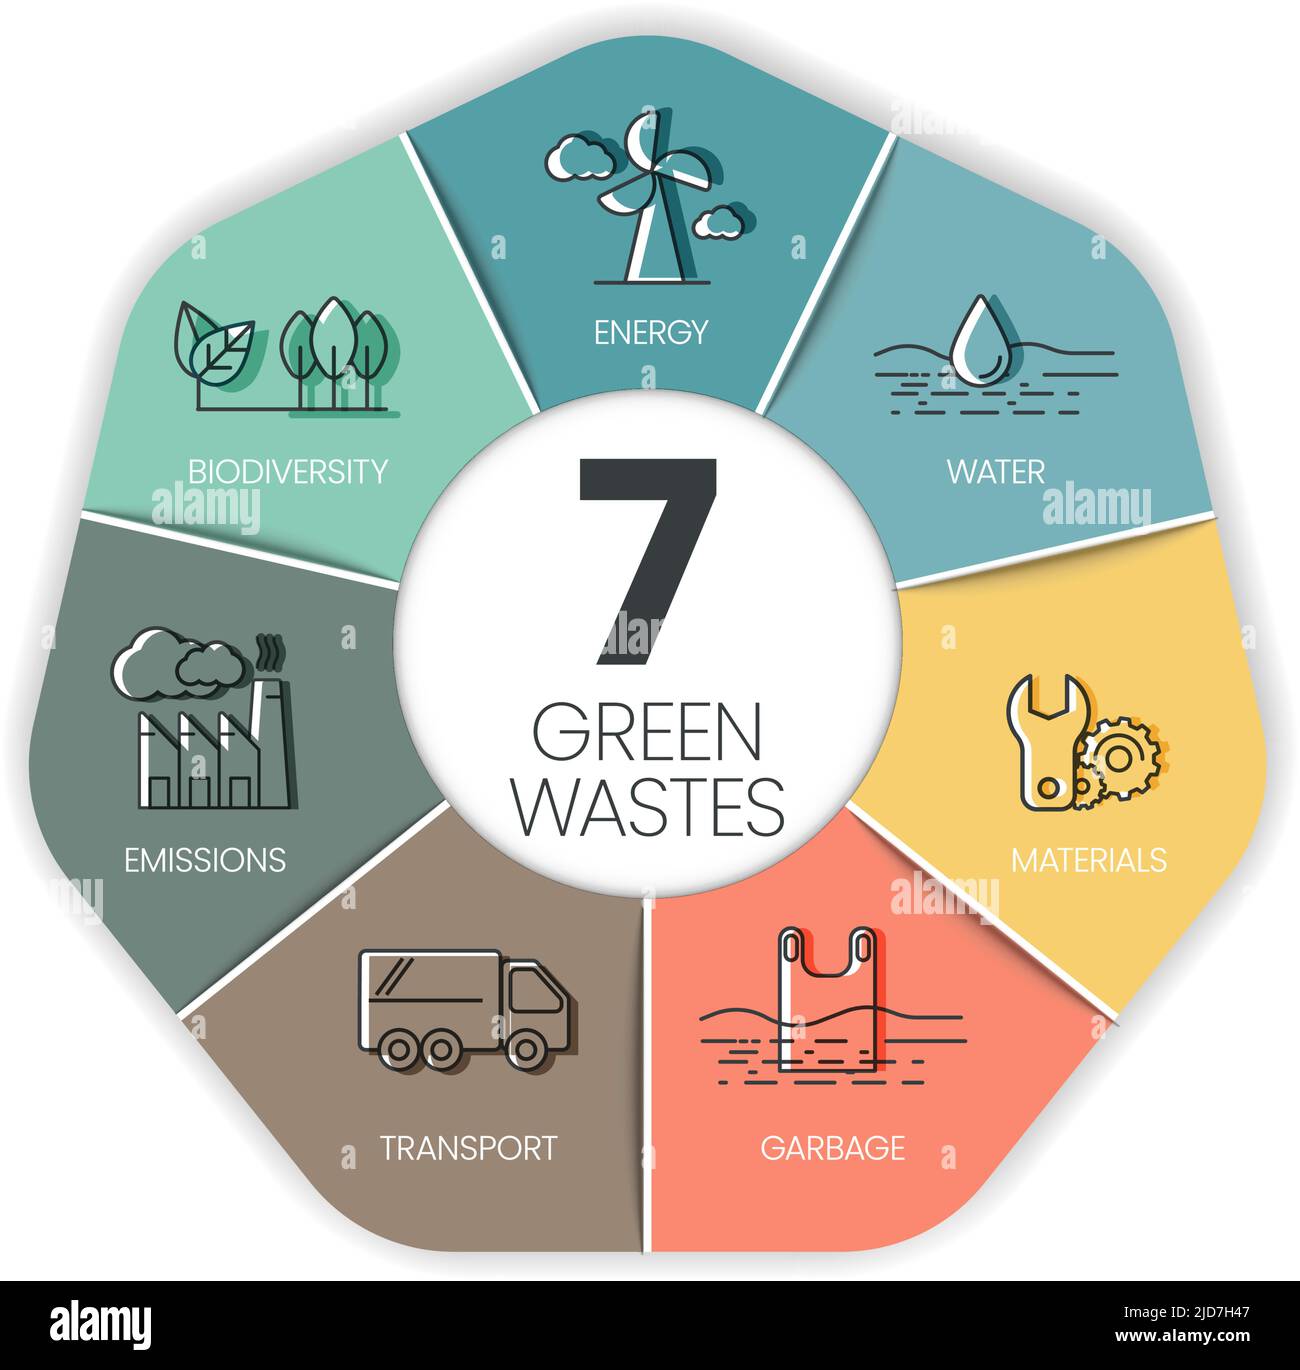 7 concept de réduction des déchets verts a de nombreuses dimensions, transport, déchets, matériel, eau, biodiversité, énergie, émissions en empreinte carbone. Illustration de Vecteur